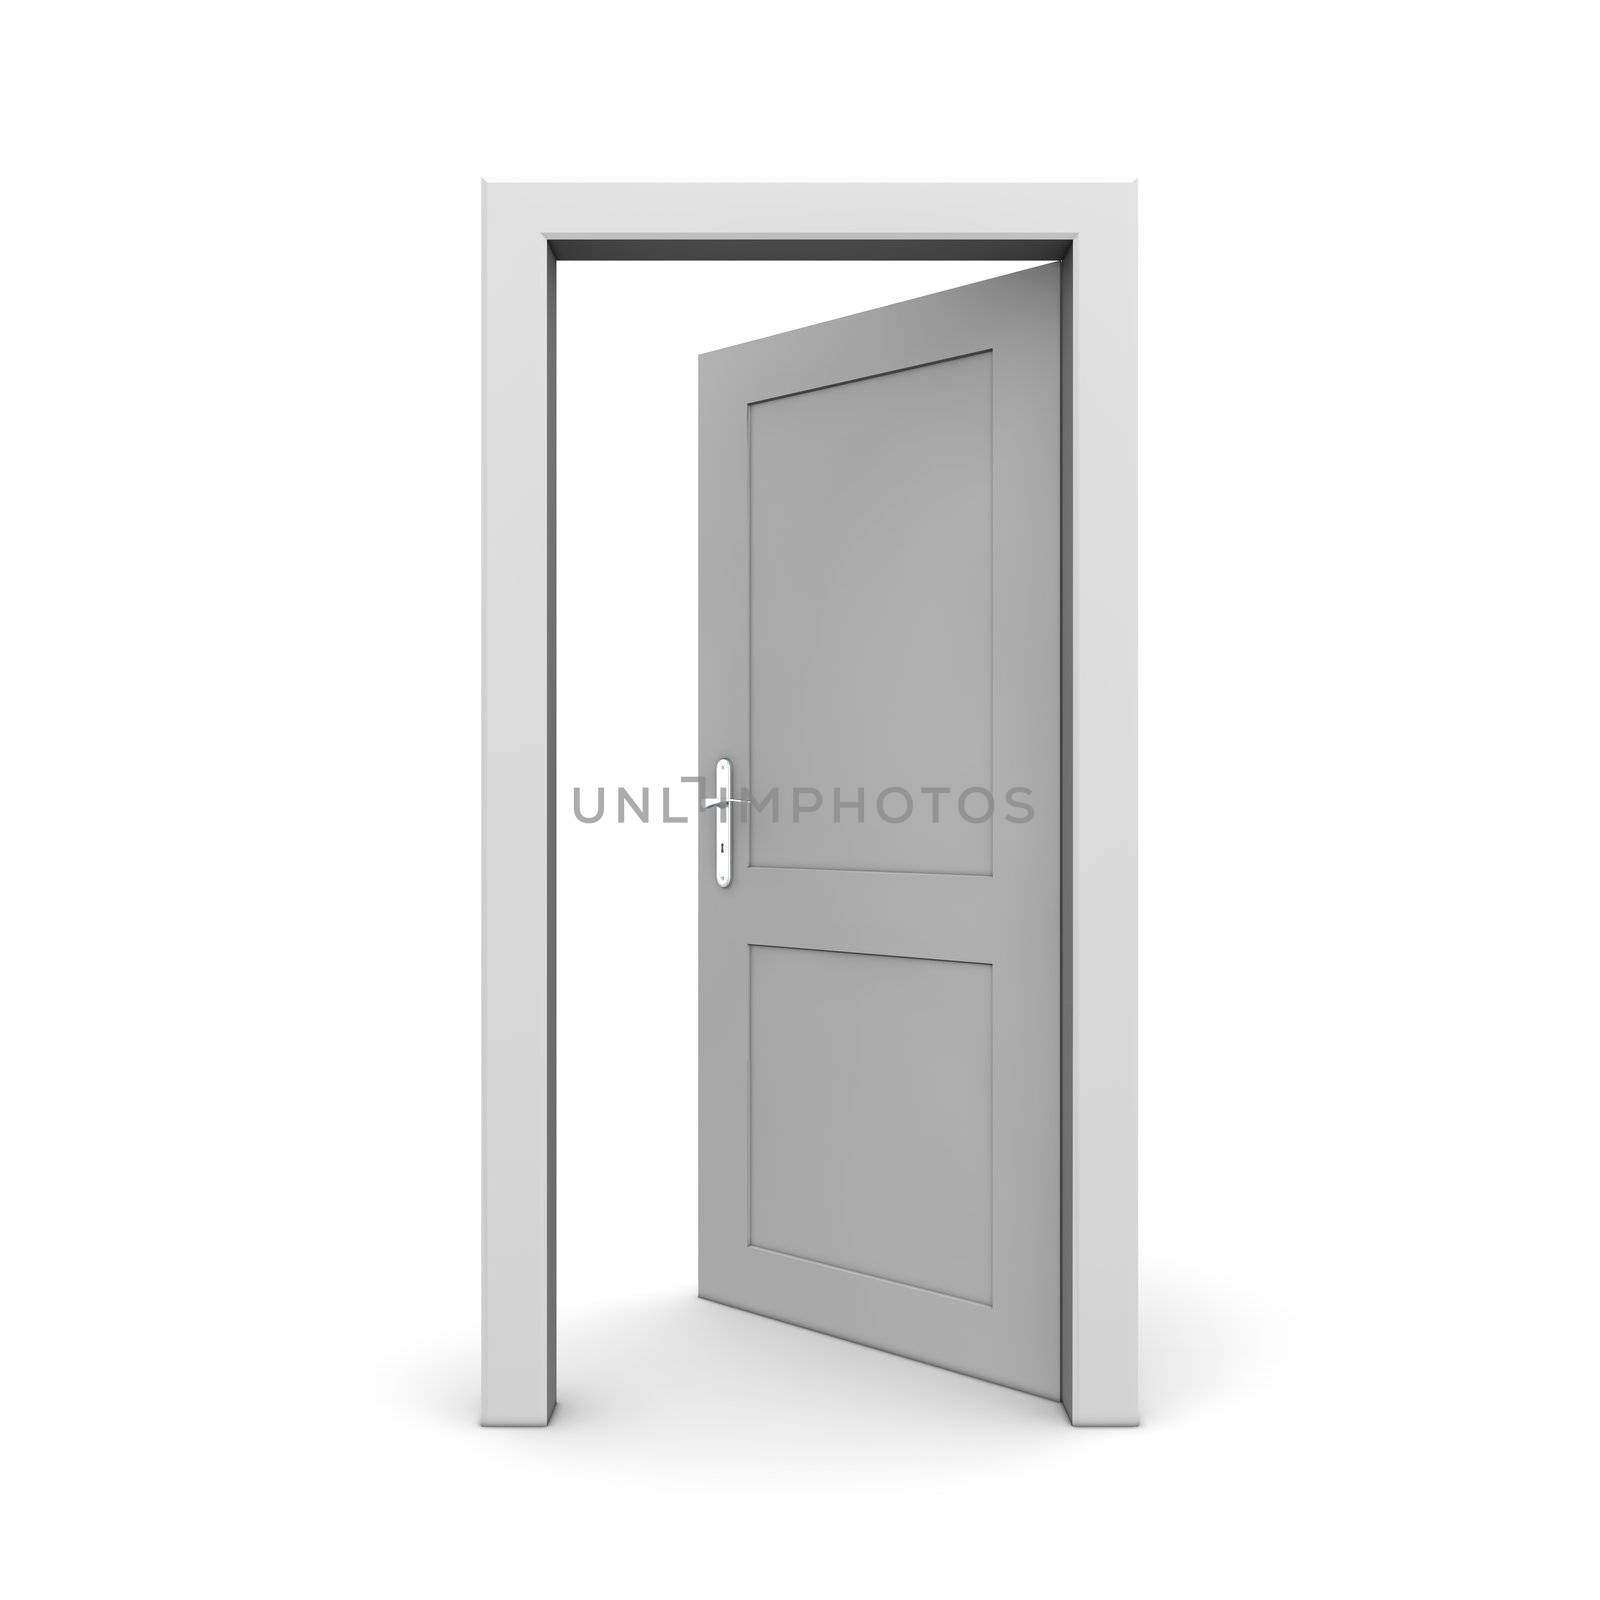 single grey door open - door frame only, no walls